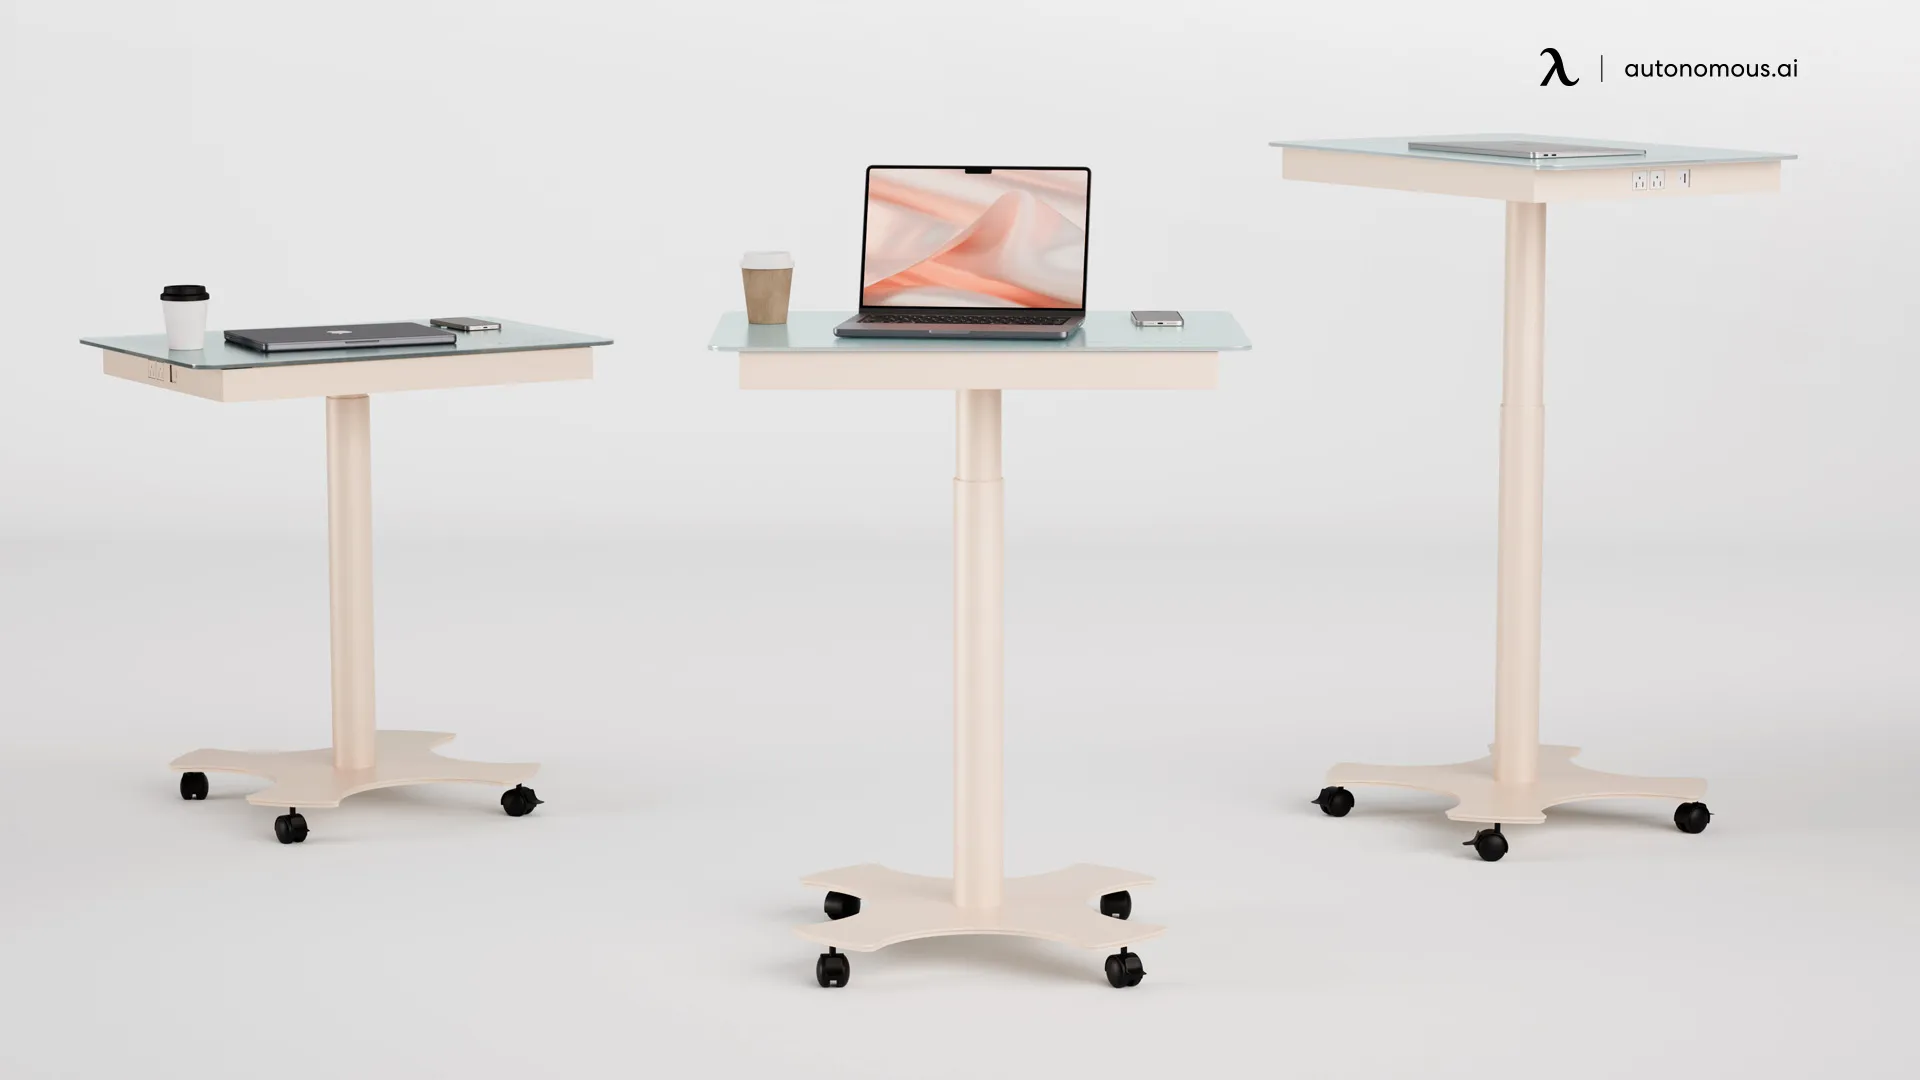 Design Innovation in Single-Leg Standing Desks